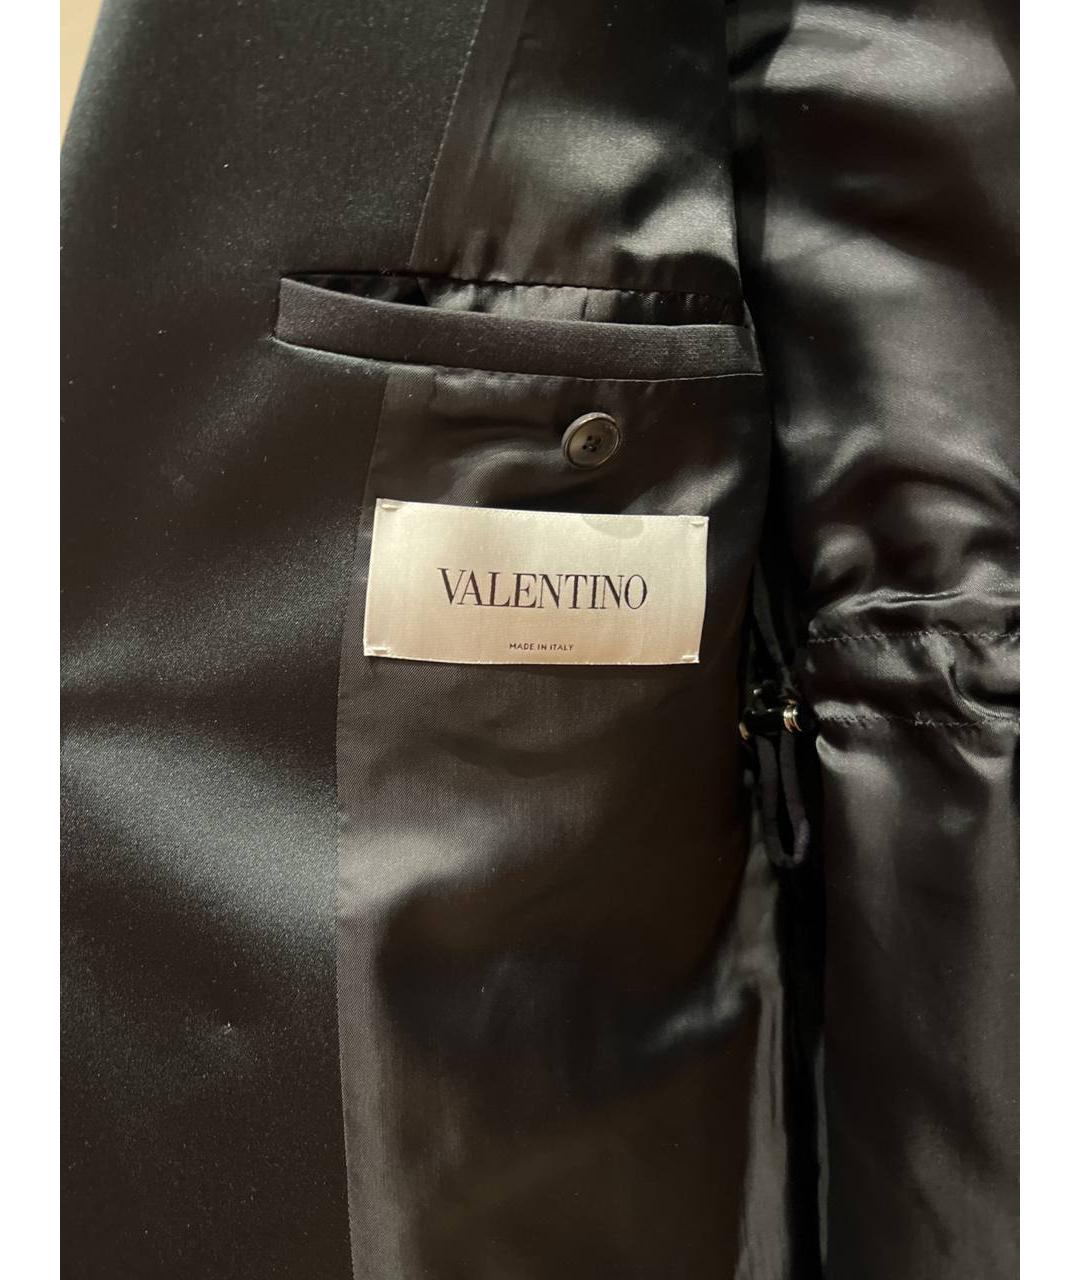 VALENTINO Черный шерстяной жакет/пиджак, фото 5